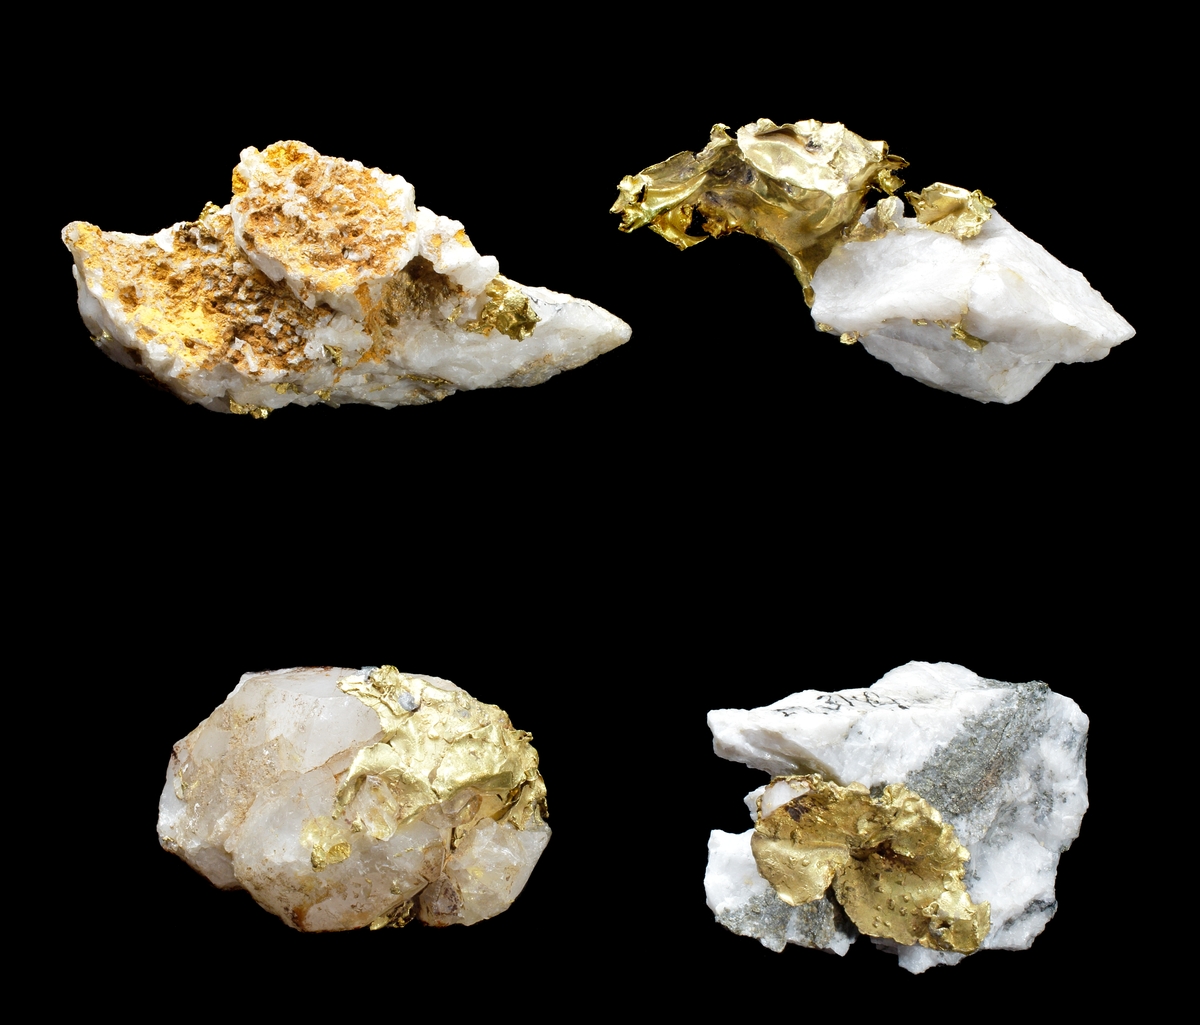 Guldstuff (stuffer kallas stycken av mineral eller bergart avsedda för studium) bestående av vit kvarts och nativt guld i form av blad, korn och i utstickande bleckform.
Operasångerskan Christina Nilsson förärades 4 st guldstuffer (M 3141-M 3144) i april 1871 under en resa till Kalifornien, USA. De kommer från gruvbolagen The Amador Co och El Dorado Co. Berörda gruvchefer gav bort något av det bästa man kunde visa upp. De utgjorde samtliga prover på ursprungligt guld som gjort Kalifornien känt över en stor del av världen (Svensk numismatisk tidskrift nr 4, maj 2008, s. 88)